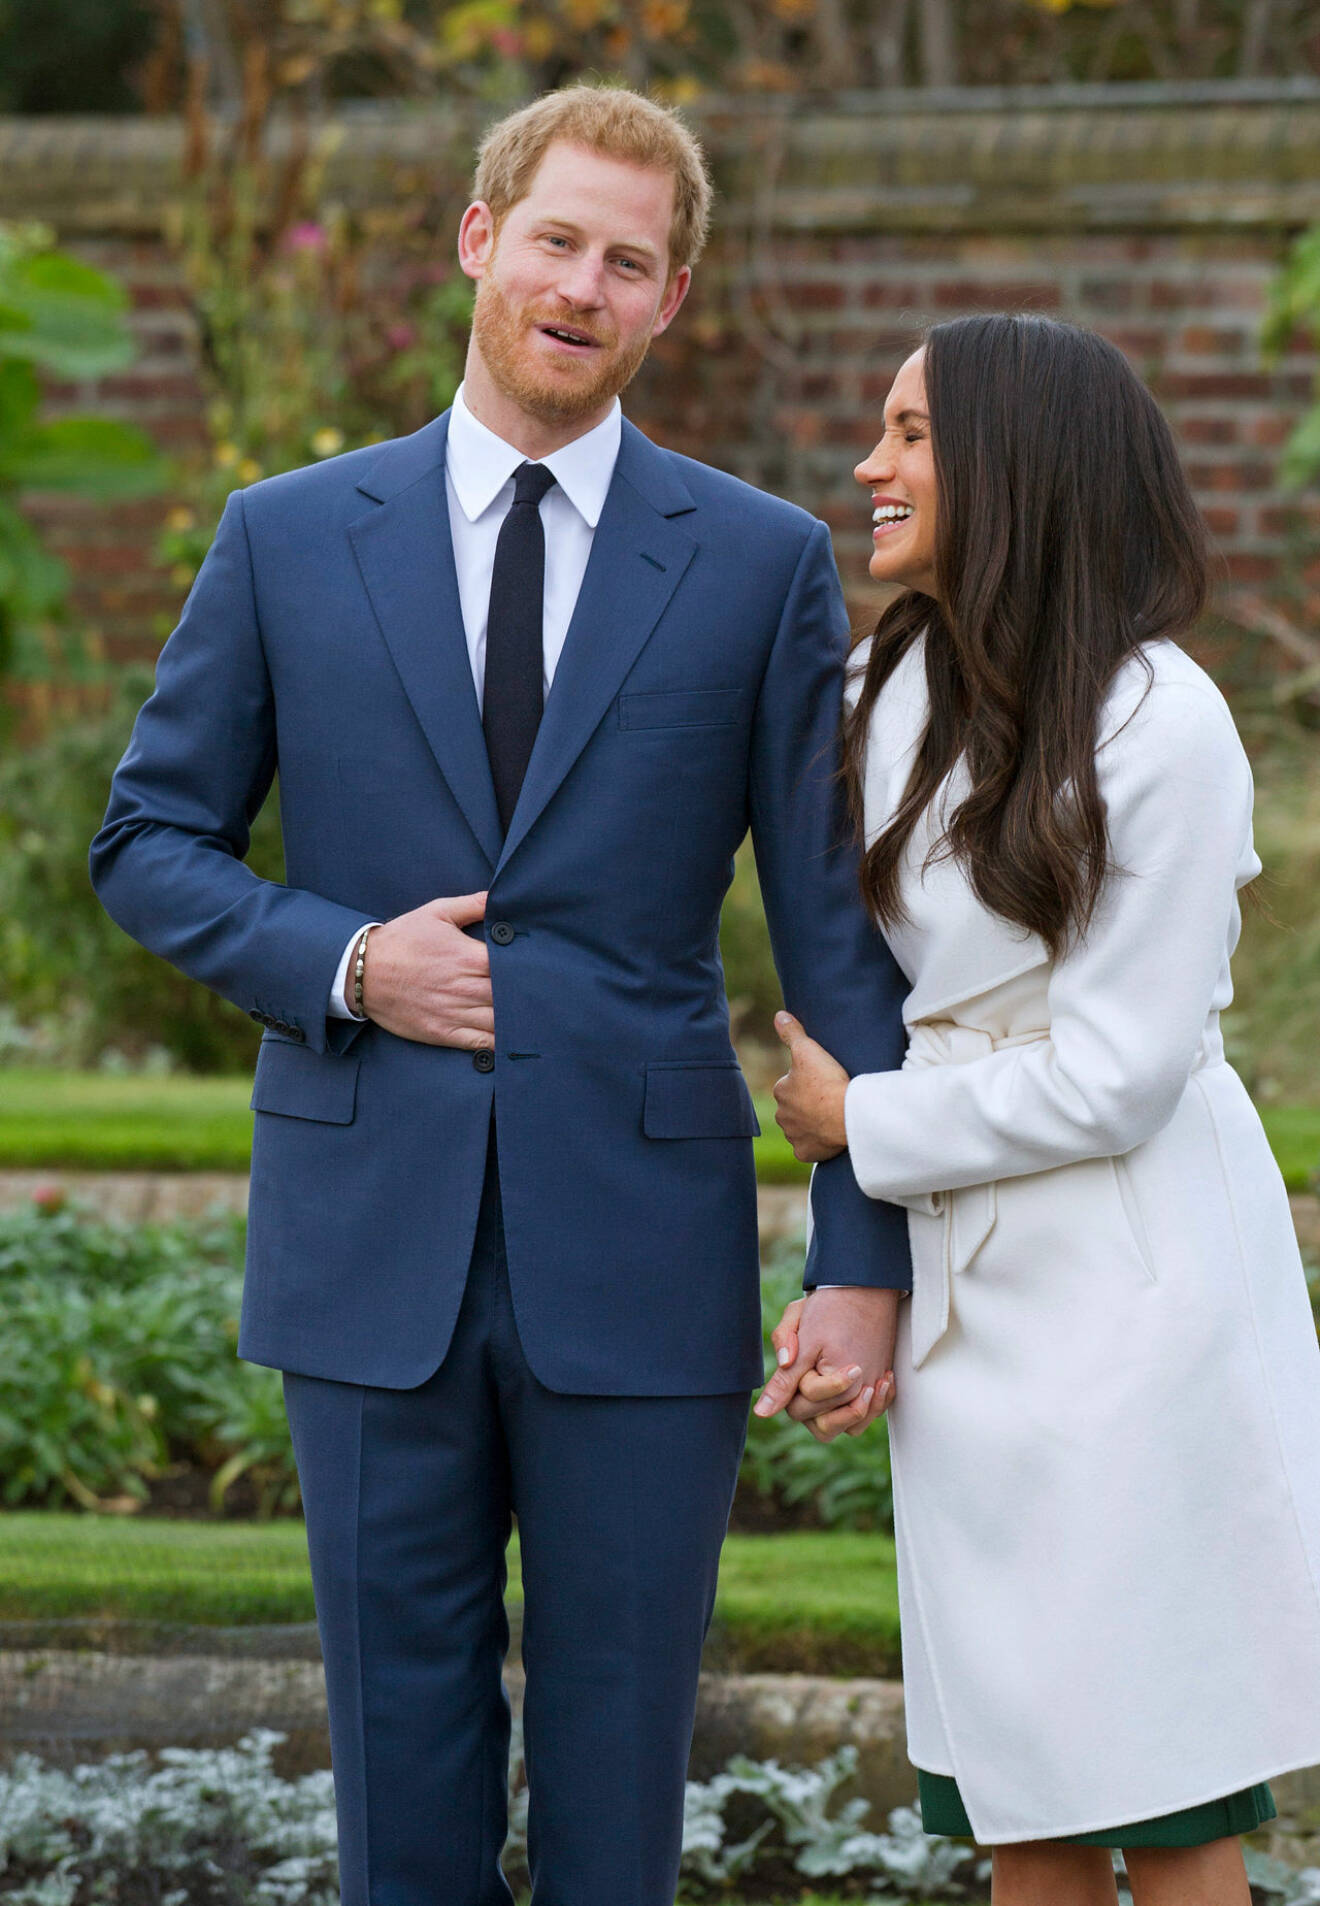 Värmen mellan dem är så tydlig. Här berättar de för världen att de har förlovat sig, även då är det skoj och skämt mellan prins Harry och hans Meghan.